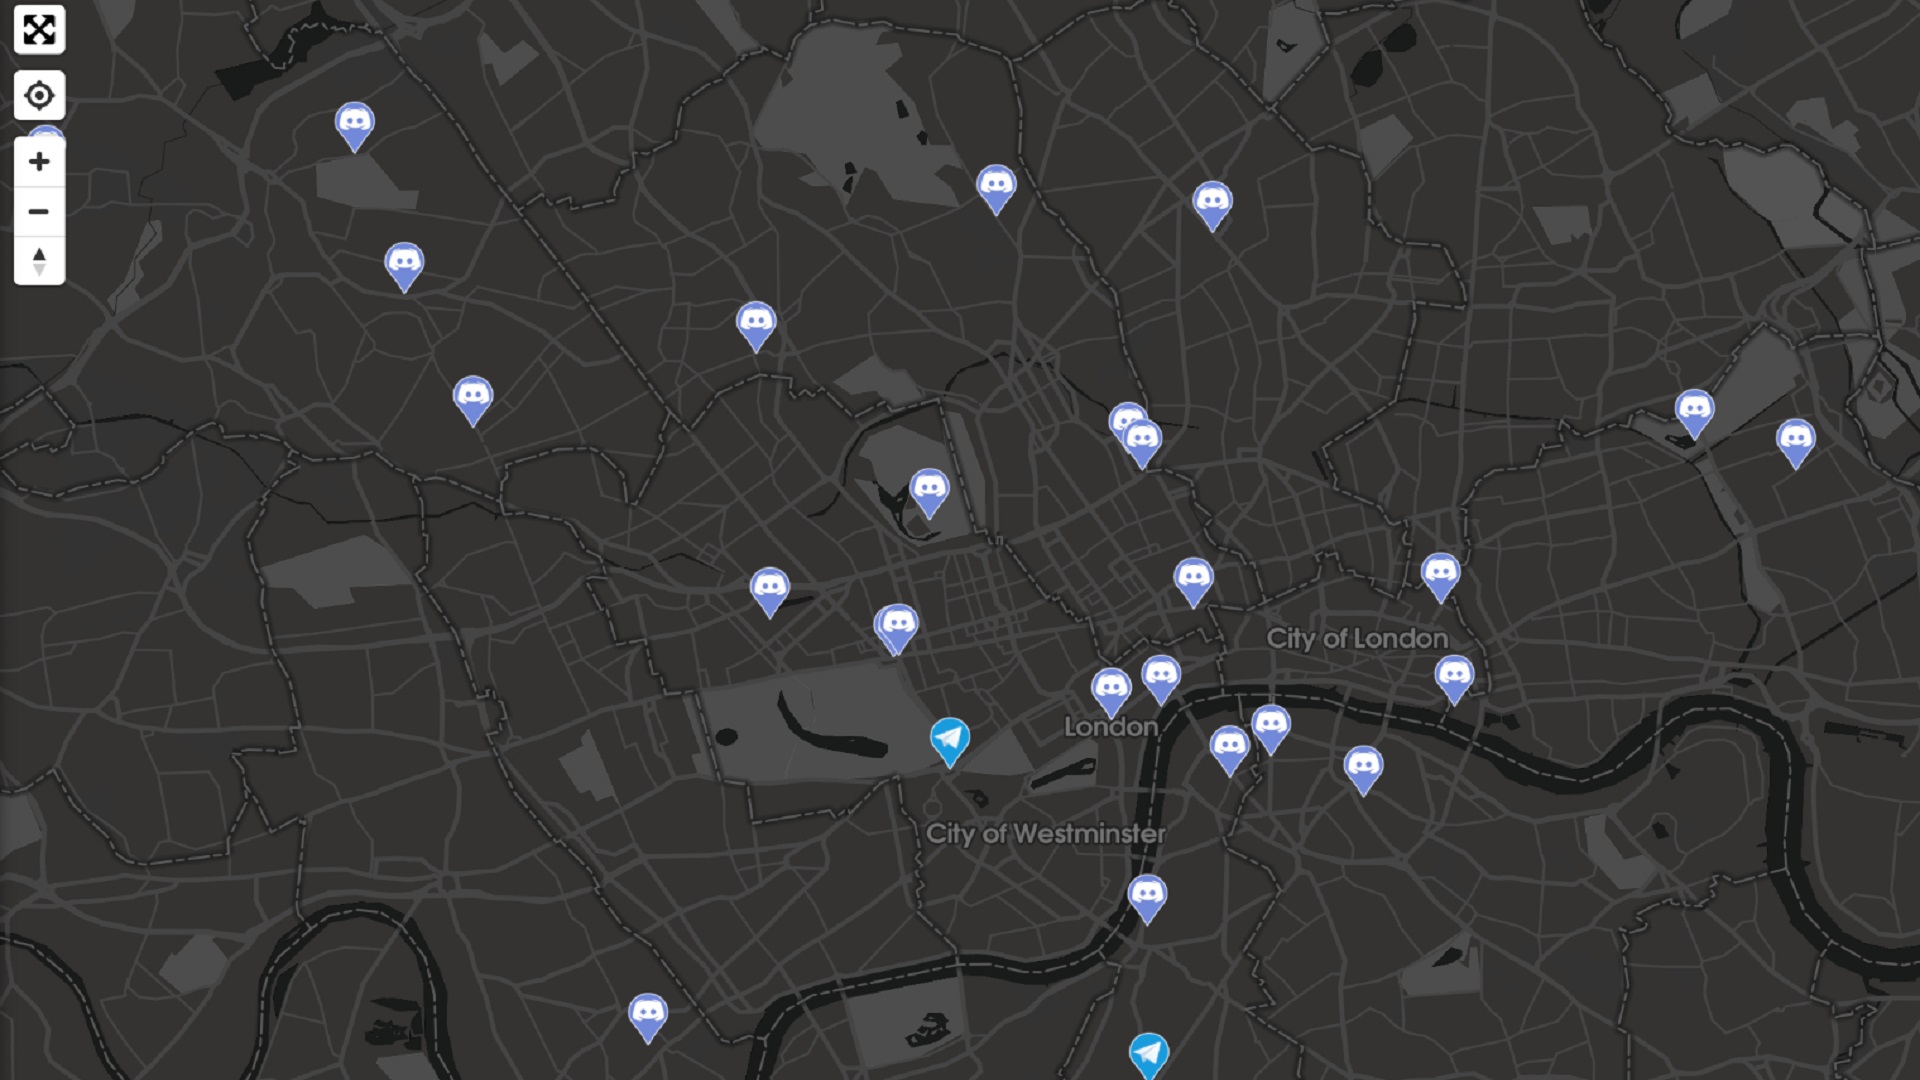 Mapy Pokémon Go - mapa London Street v tmavom režime